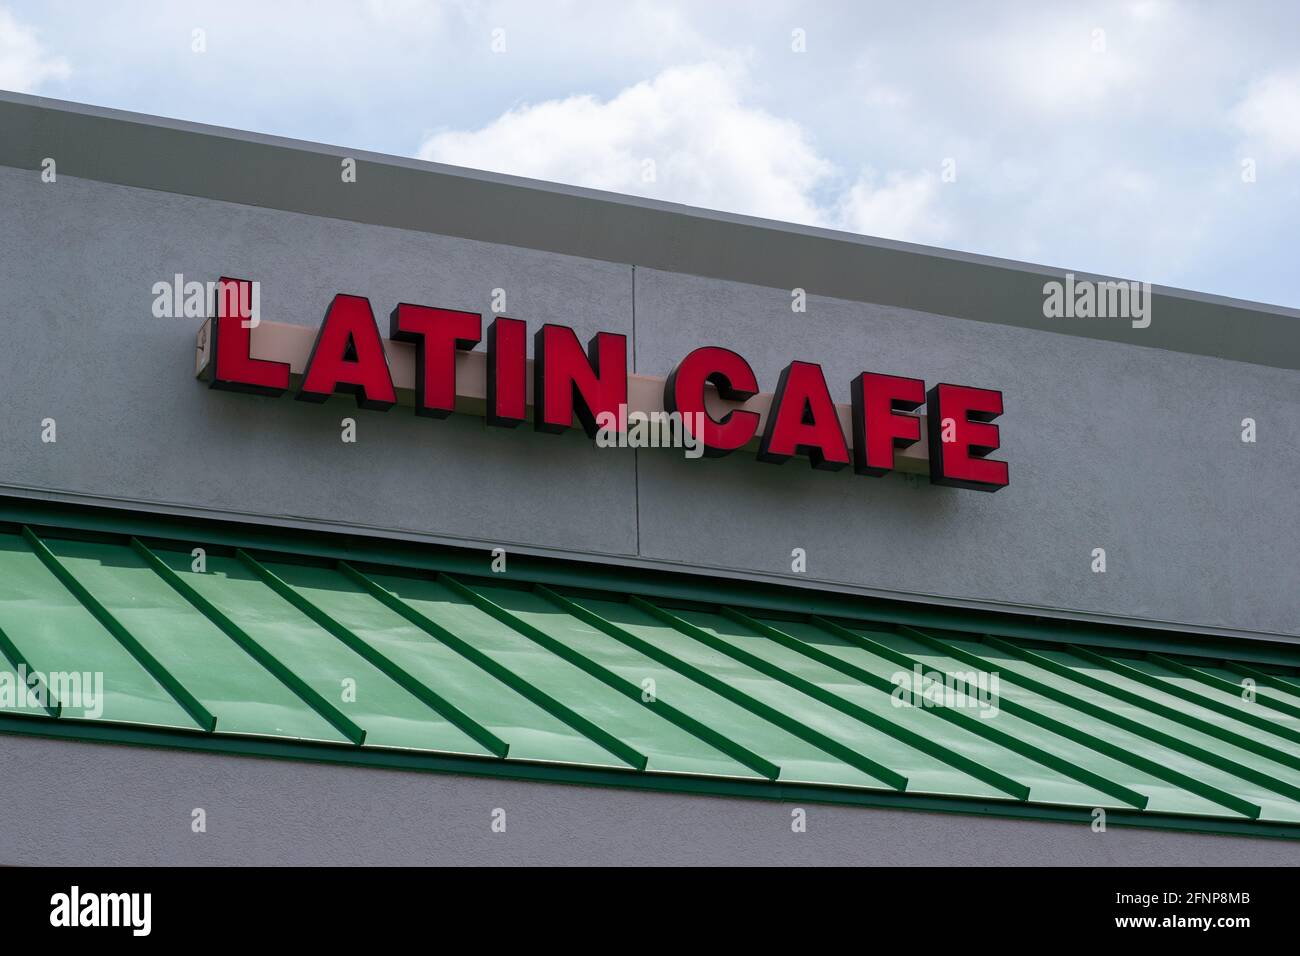 Cartello Generic Latin Cafe in un centro commerciale. Cartello rosso con lettere grandi e illuminazione per una visibilità notturna. Foto Stock